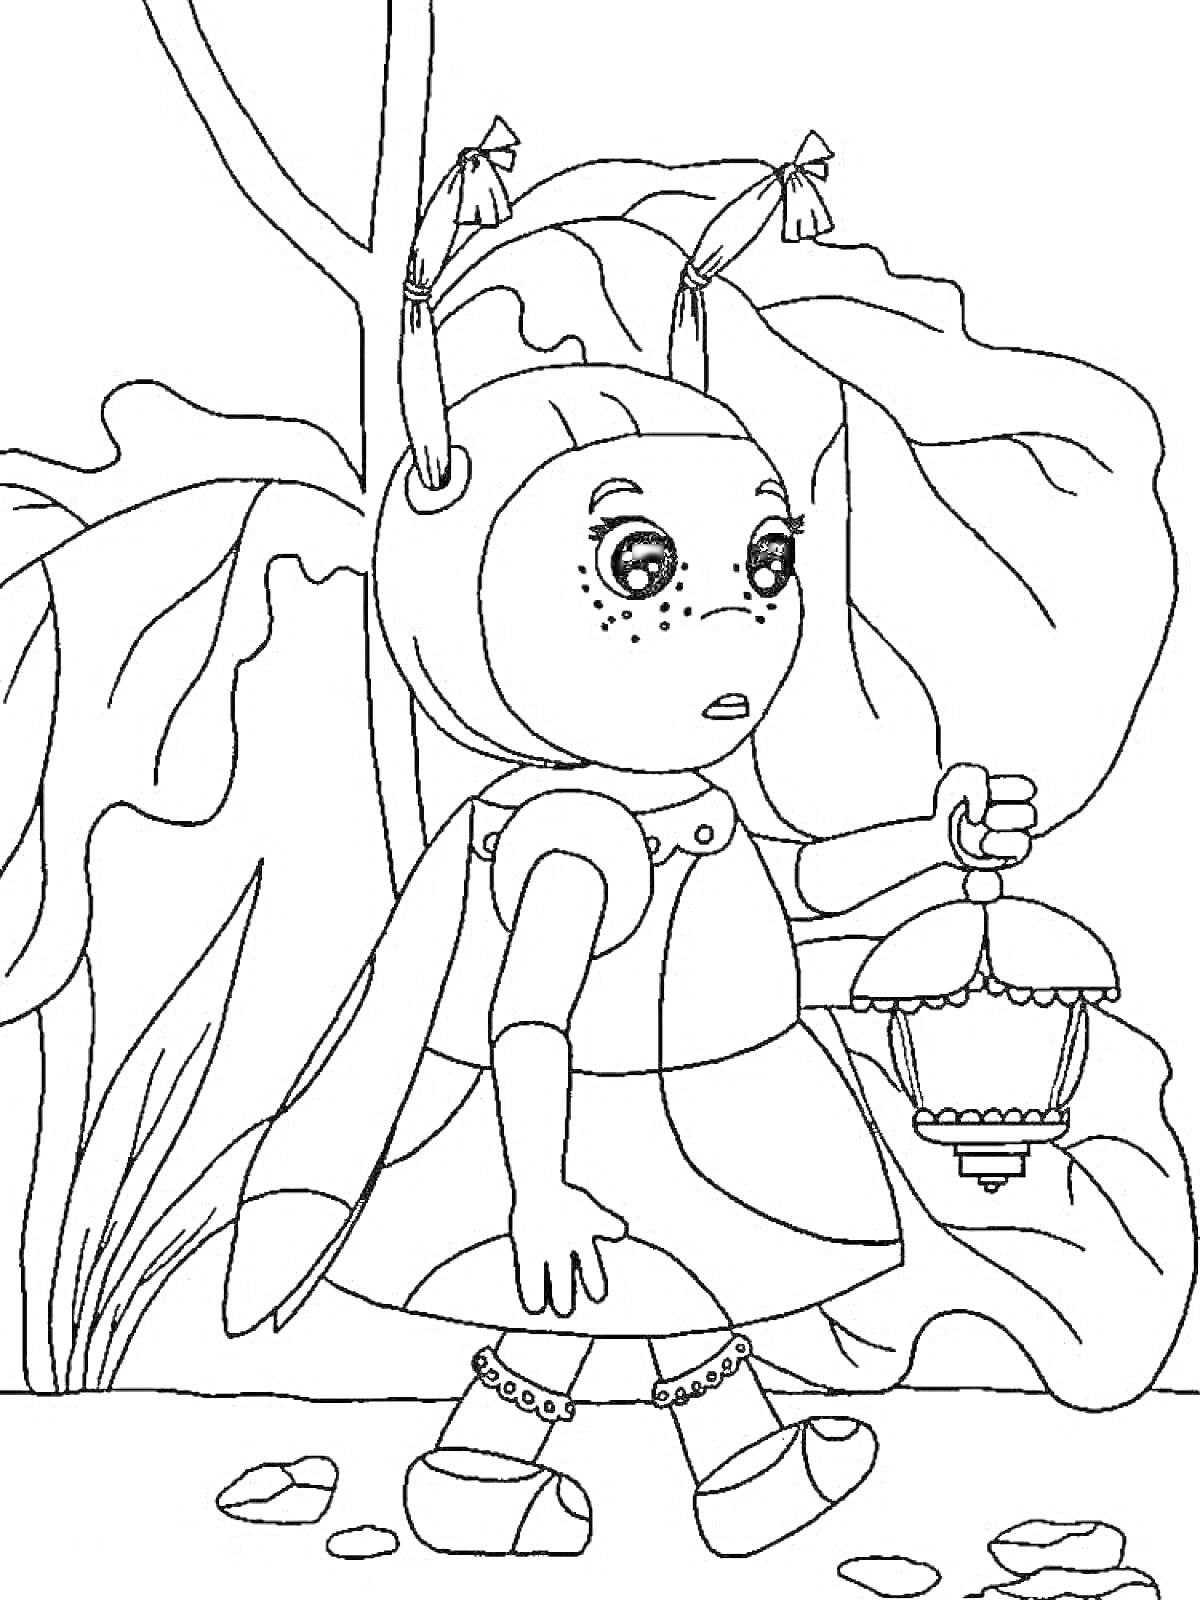 Раскраска Девочка с усиками и лампой из мультфильма 